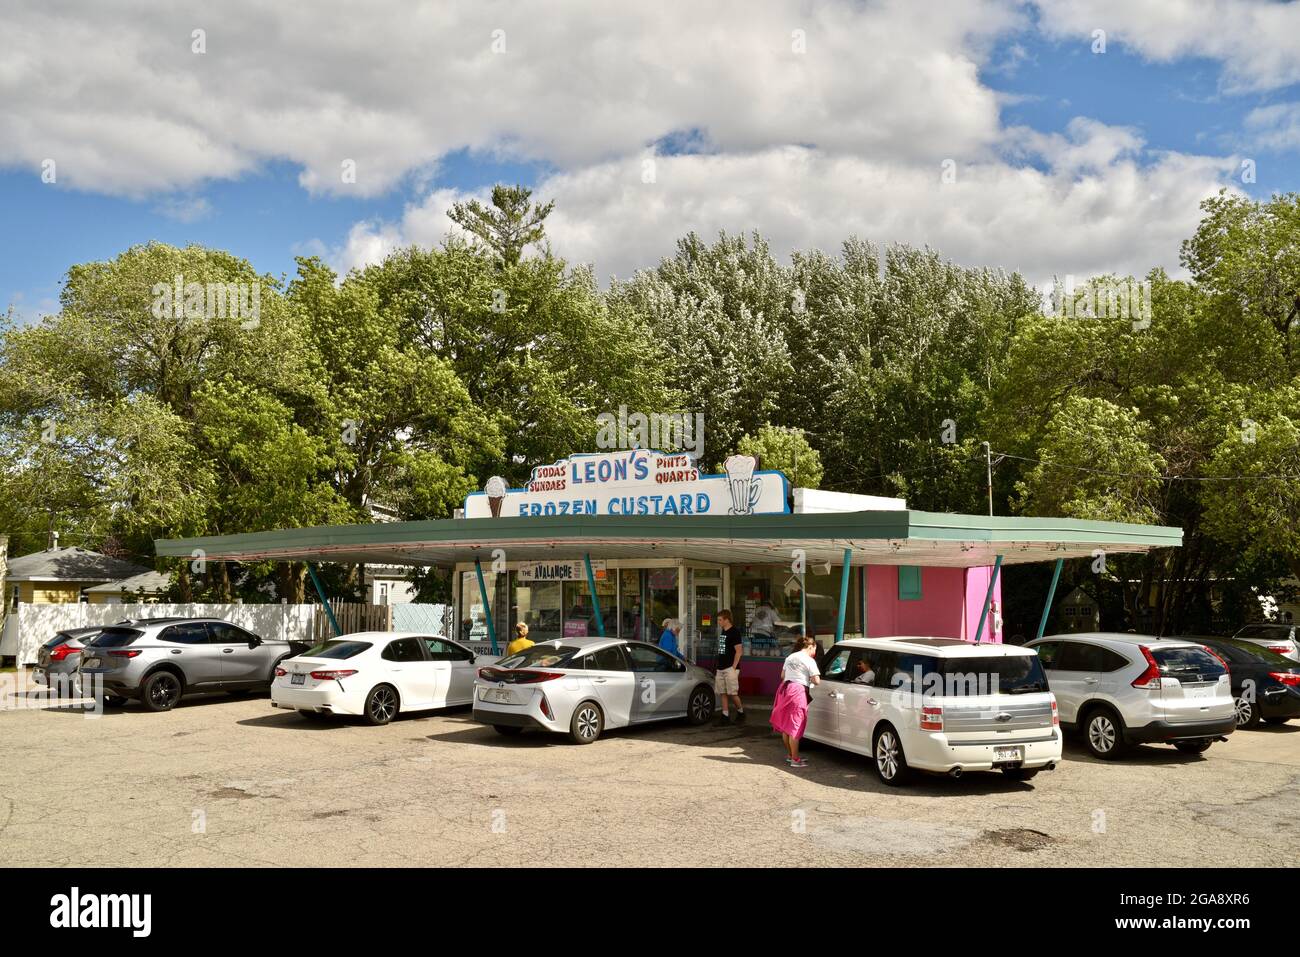 Automobili e altri veicoli parcheggiati presso la custodia Frozen di Leon, dove i clienti mangiano la crema pasticcera e il fast food in veicoli dopo gli ordini effettuati, Oshkosh, WI, USA Foto Stock